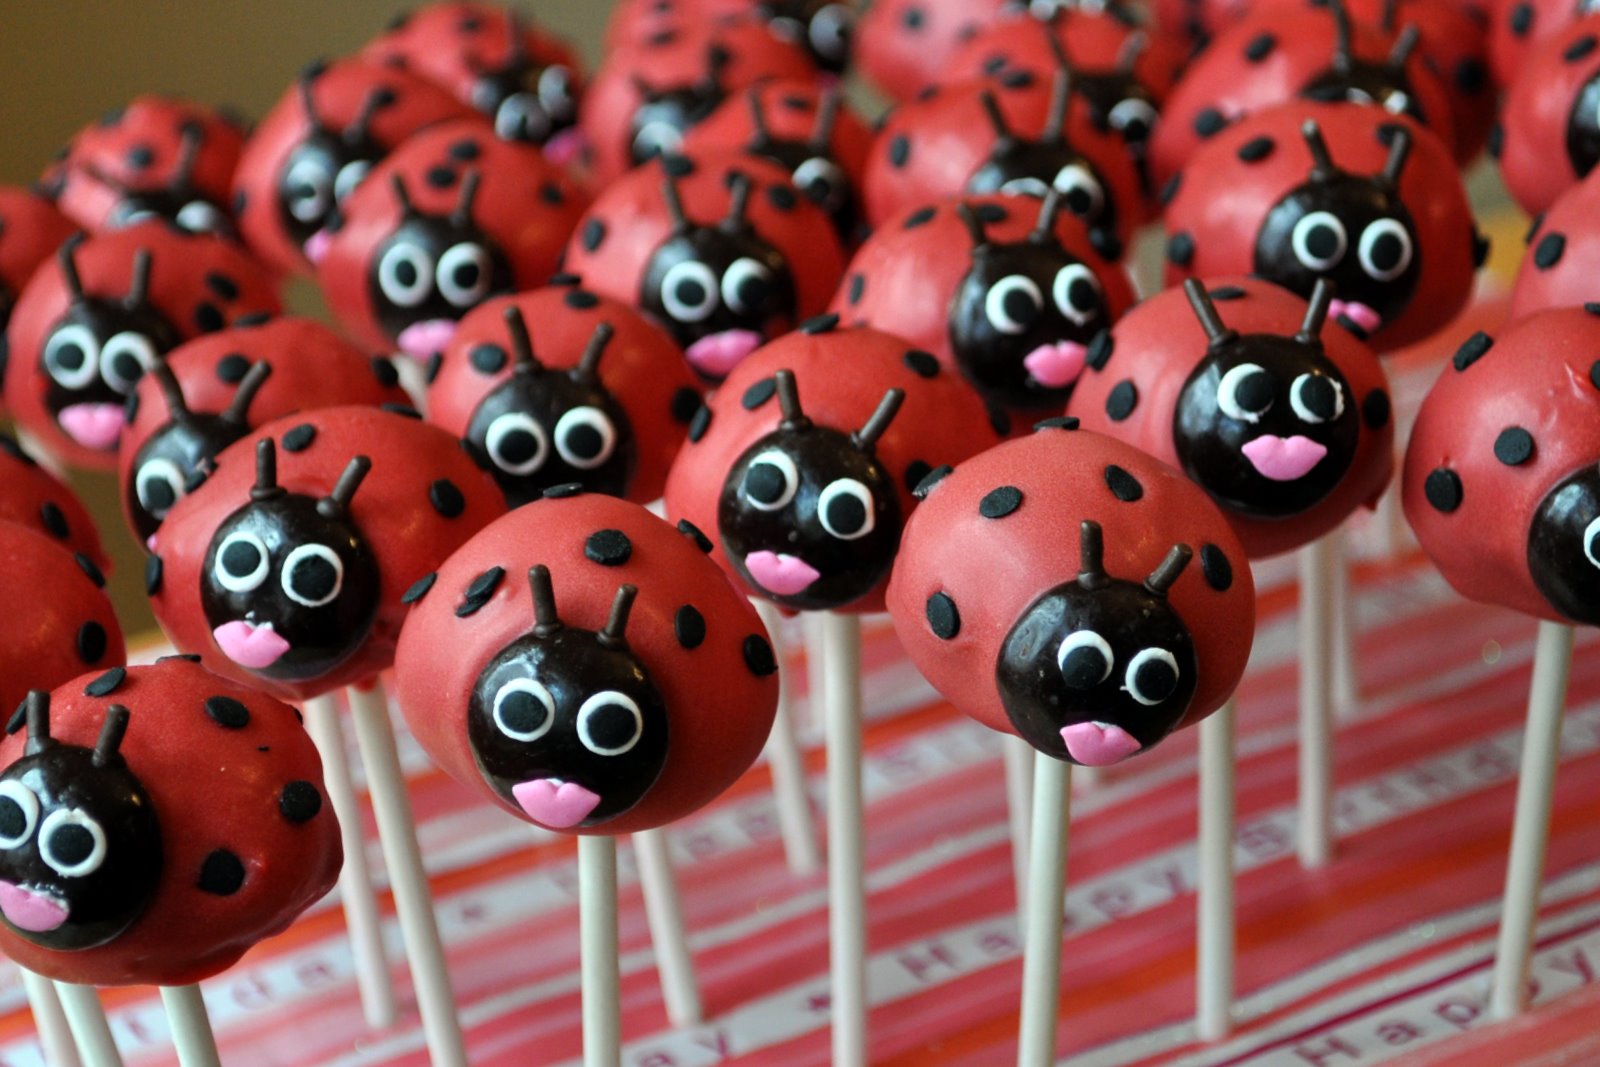 Ladybug Cakes Decoration Ideas Little Birthday Cakes